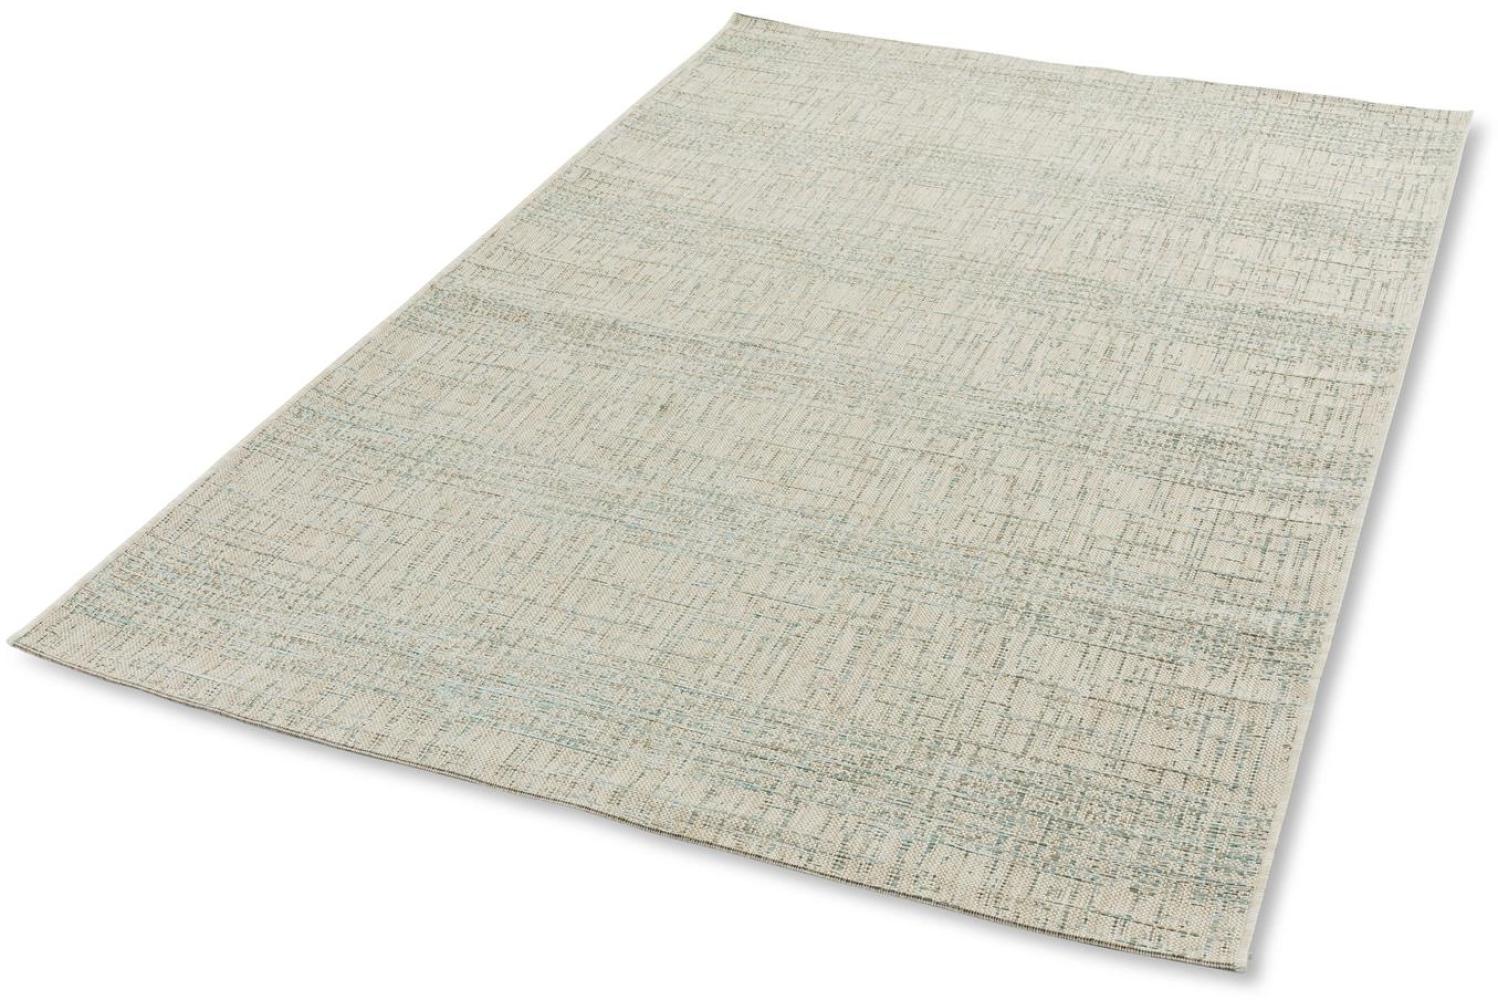 Teppich in aqua aus 100% Polypropylen - 230x160x0,5cm (LxBxH) Bild 1